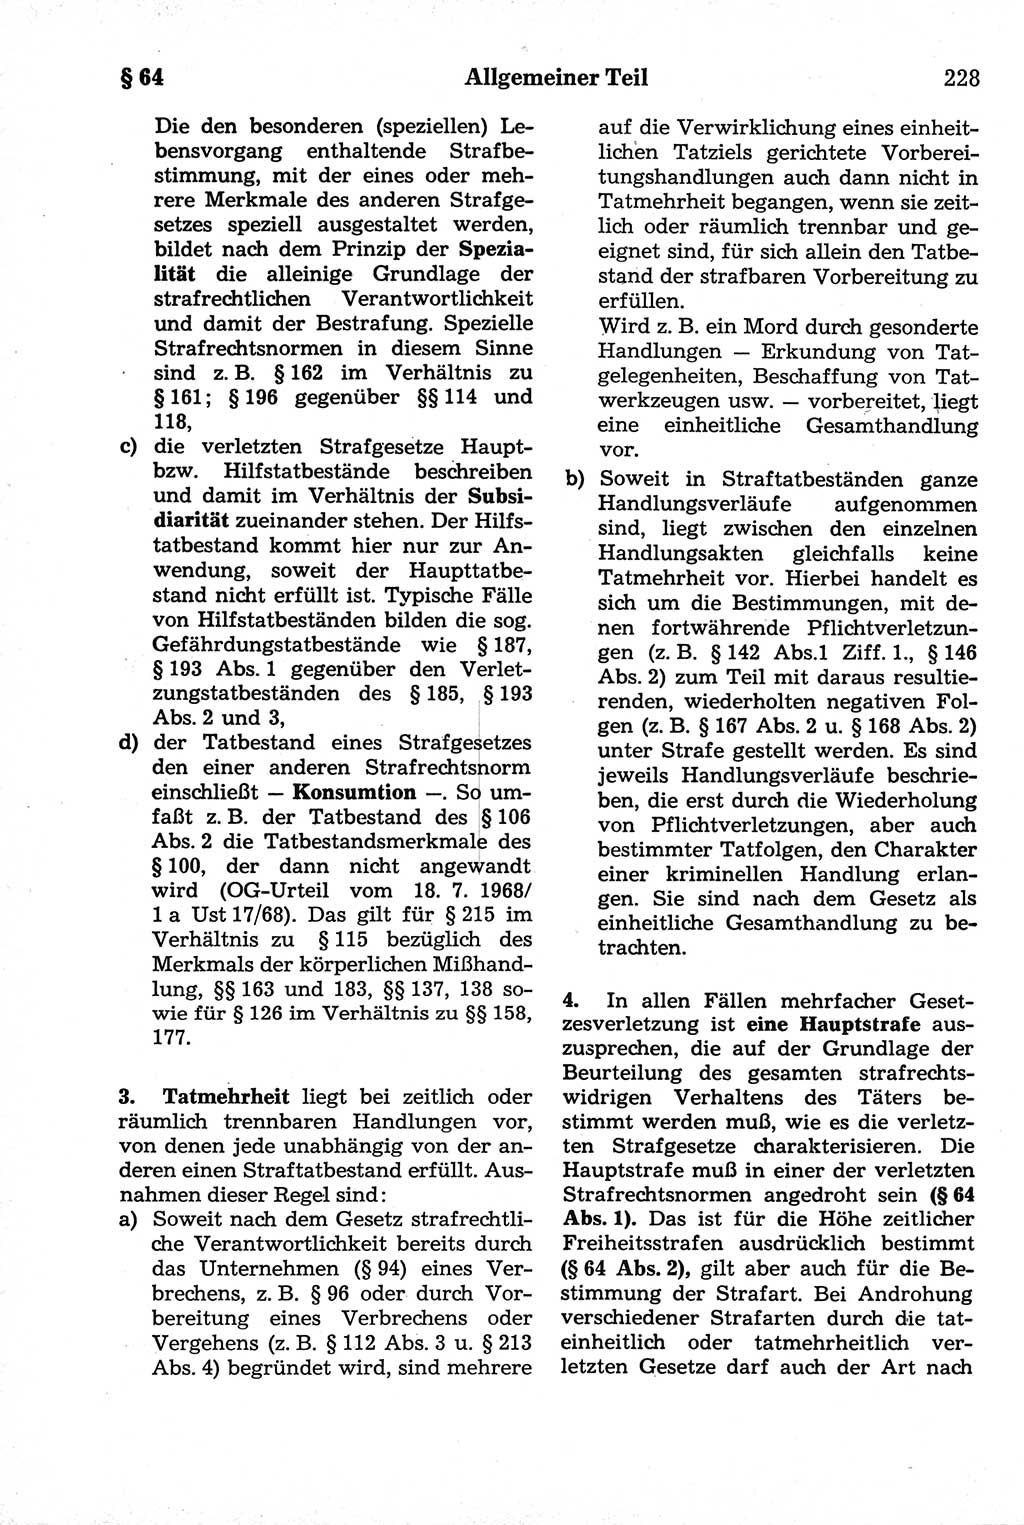 Strafrecht der Deutschen Demokratischen Republik (DDR), Kommentar zum Strafgesetzbuch (StGB) 1981, Seite 228 (Strafr. DDR Komm. StGB 1981, S. 228)